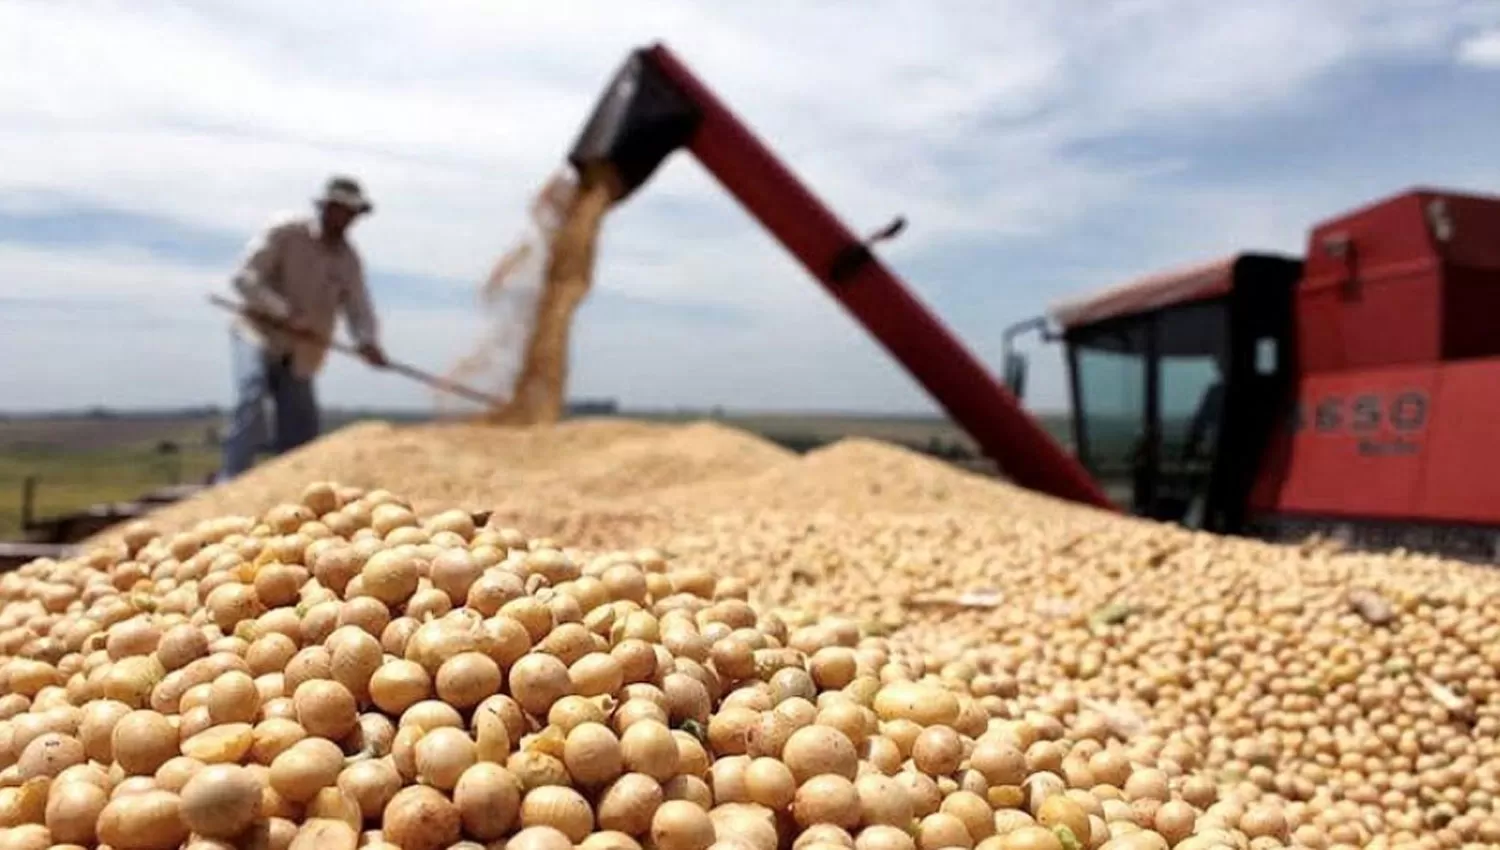 AL TOPE. La harina de soja es el producto más exportado del país según los registros del Indec.